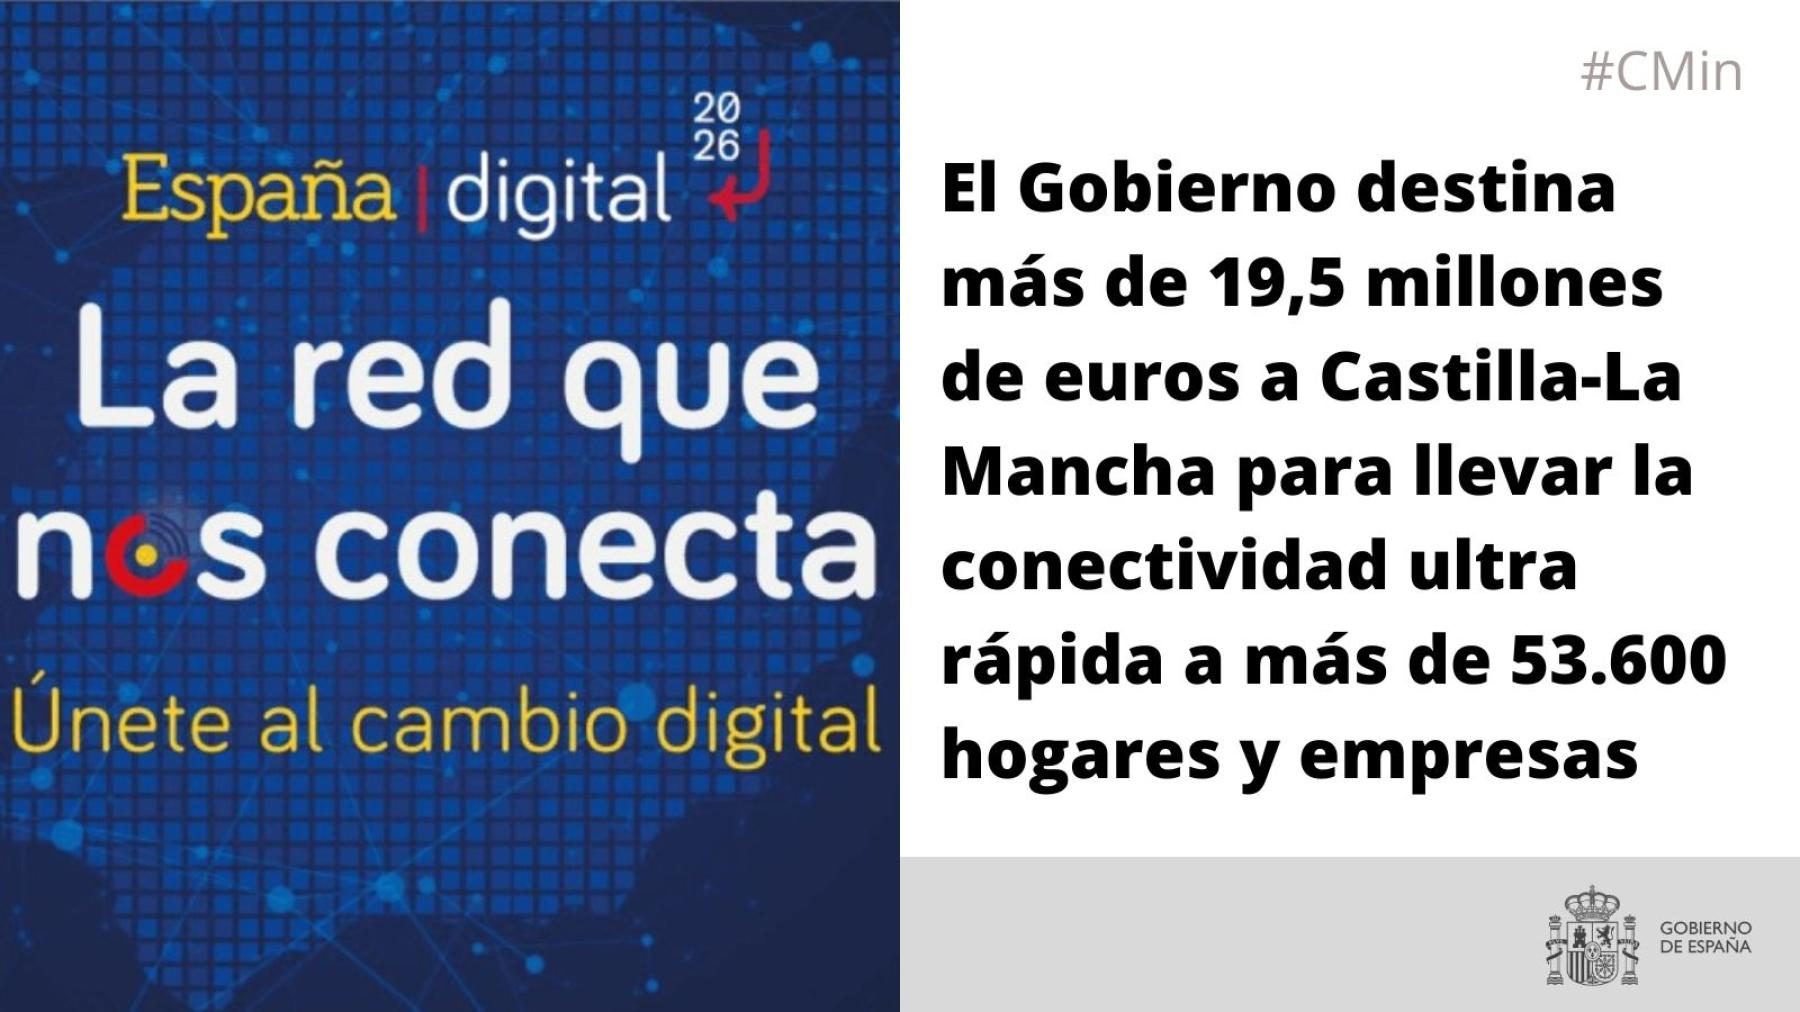 El Gobierno destina más de 19,5 millones de euros a Castilla-La Mancha para llevar la conectividad ultra rápida a más de 53.600 hogares y empresas
